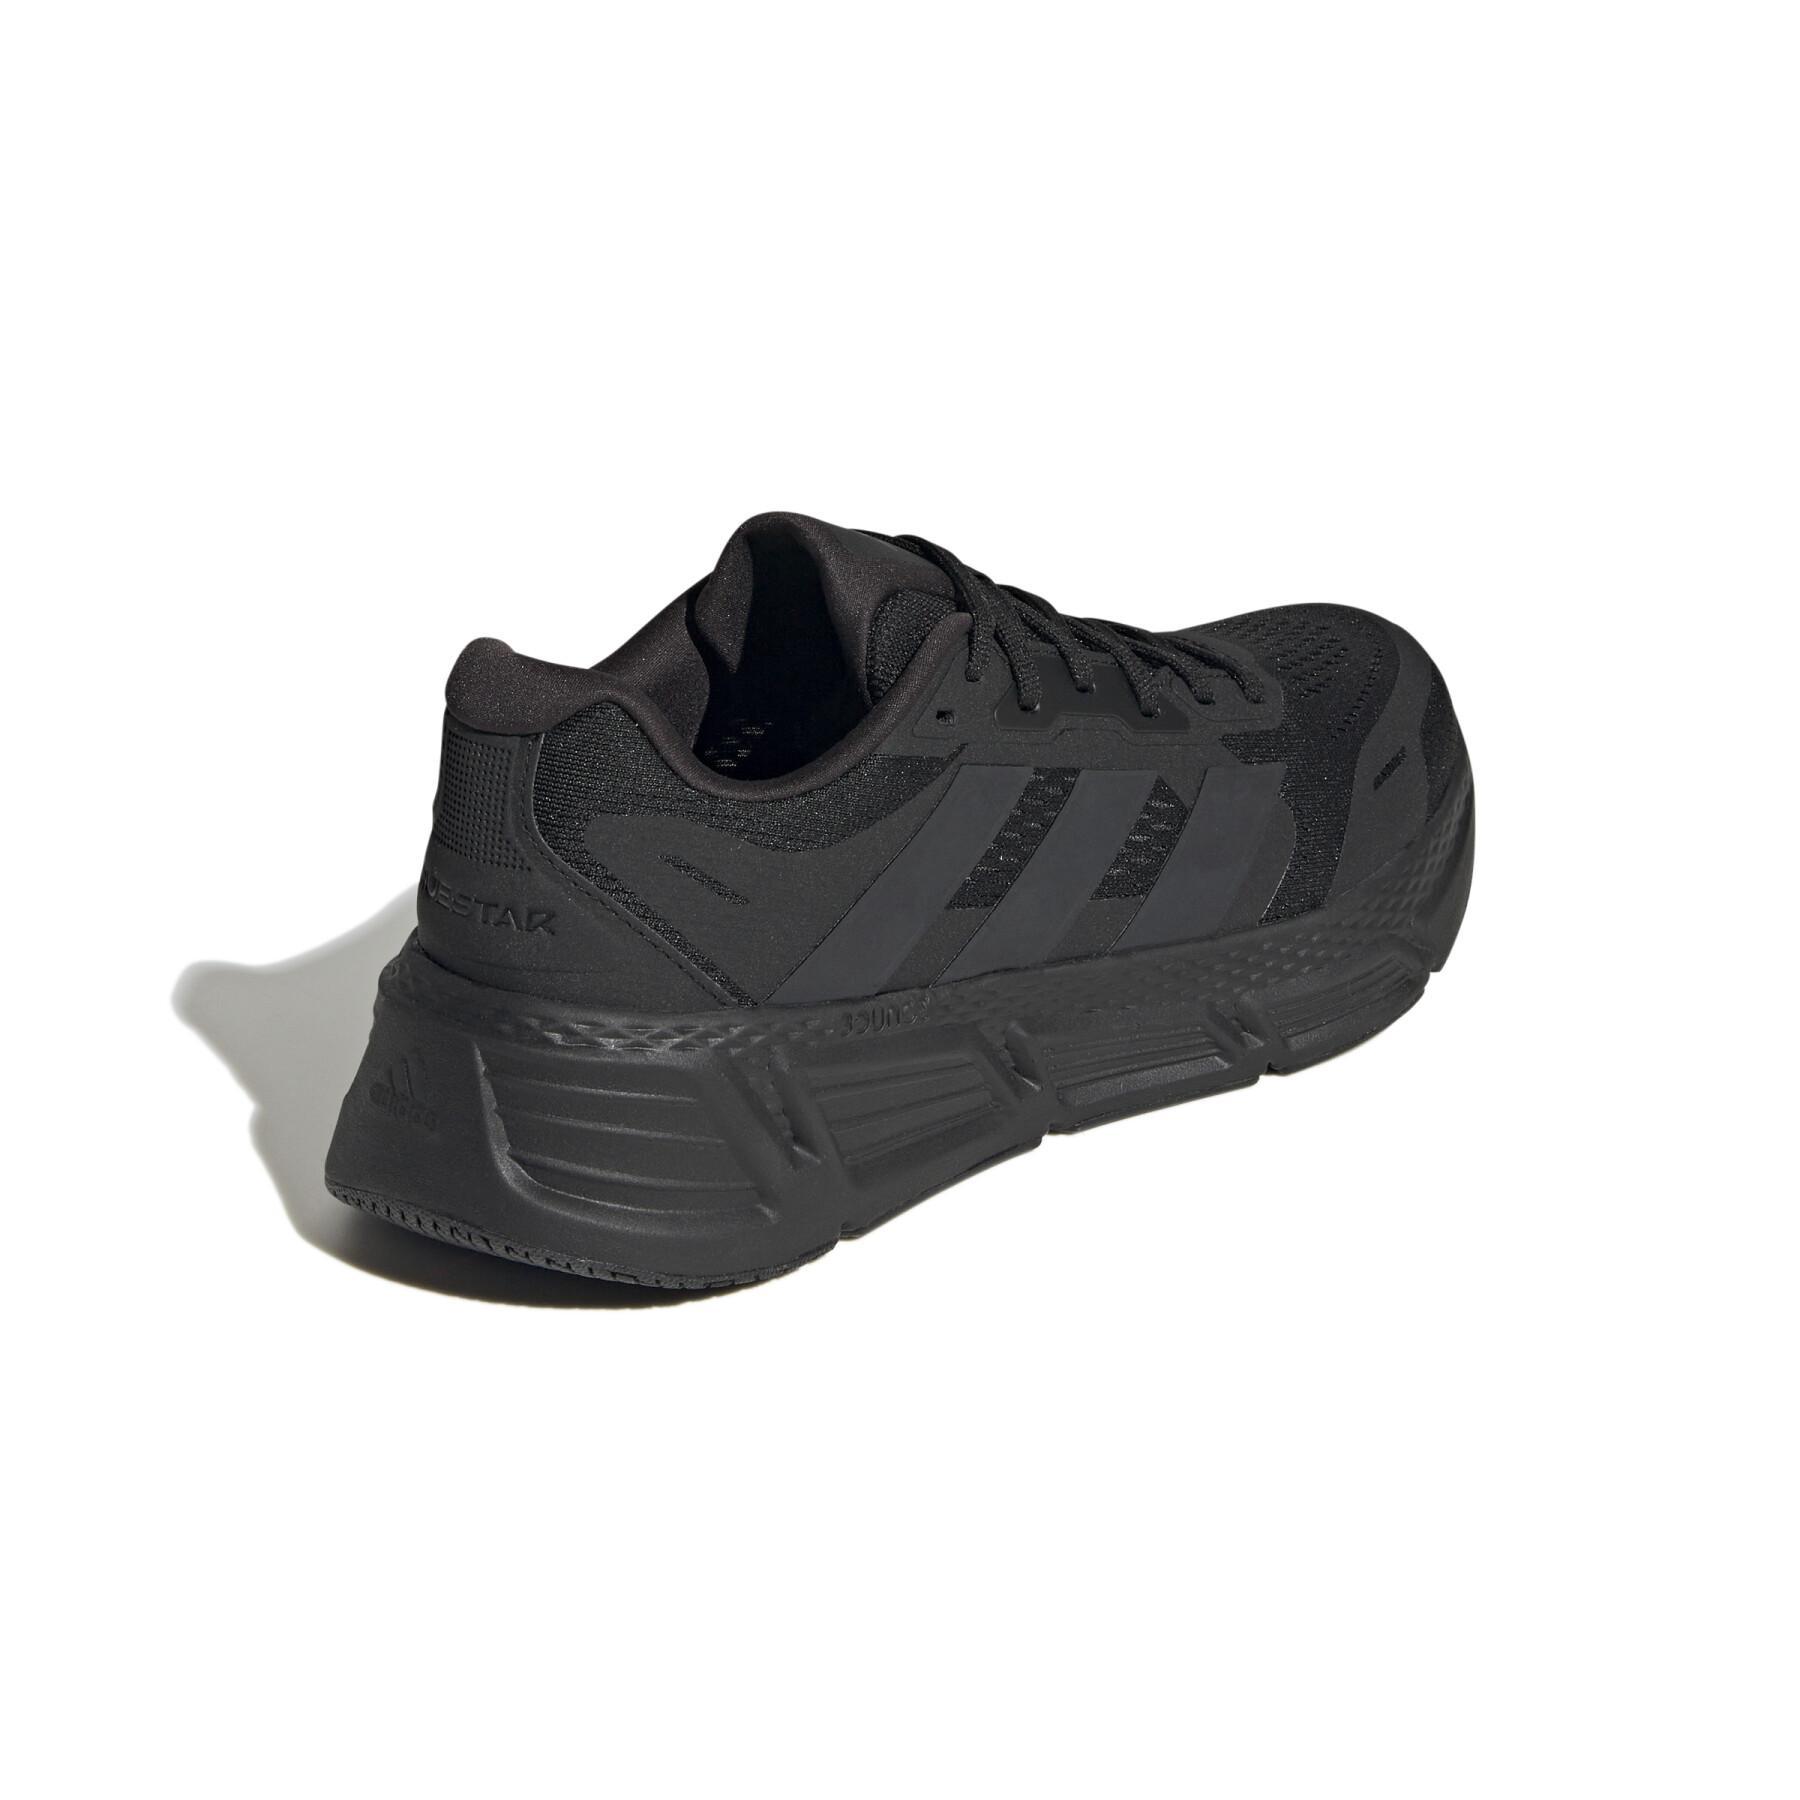 Chaussures de running adidas Questar